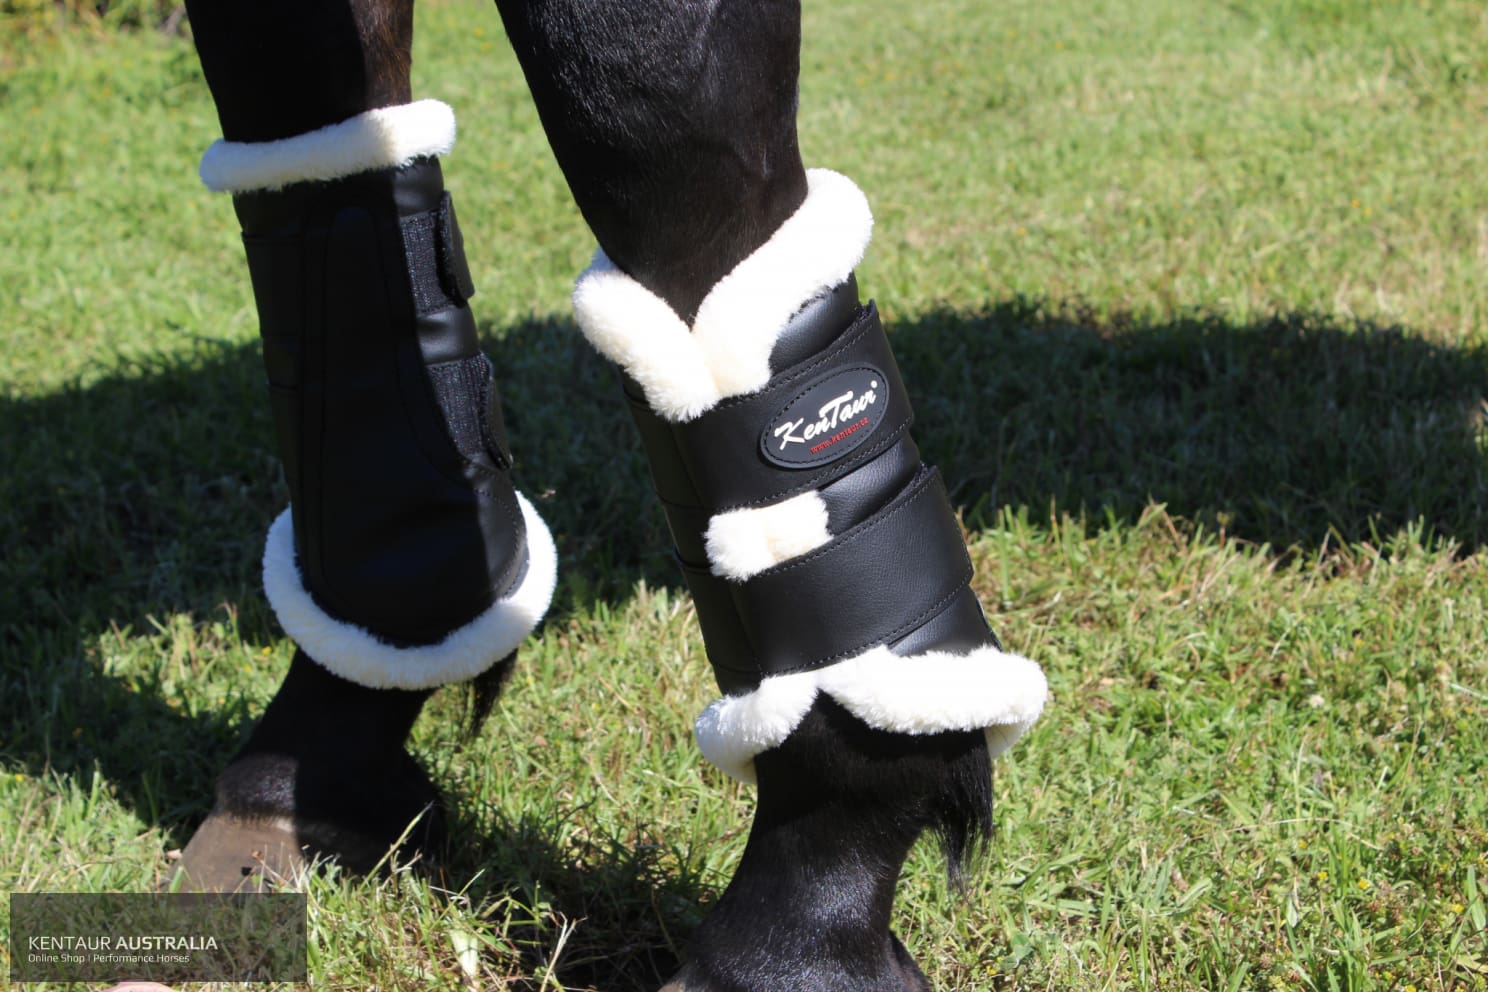 Kentaur Artificial Sheepskin Dressage Boots dressage boots